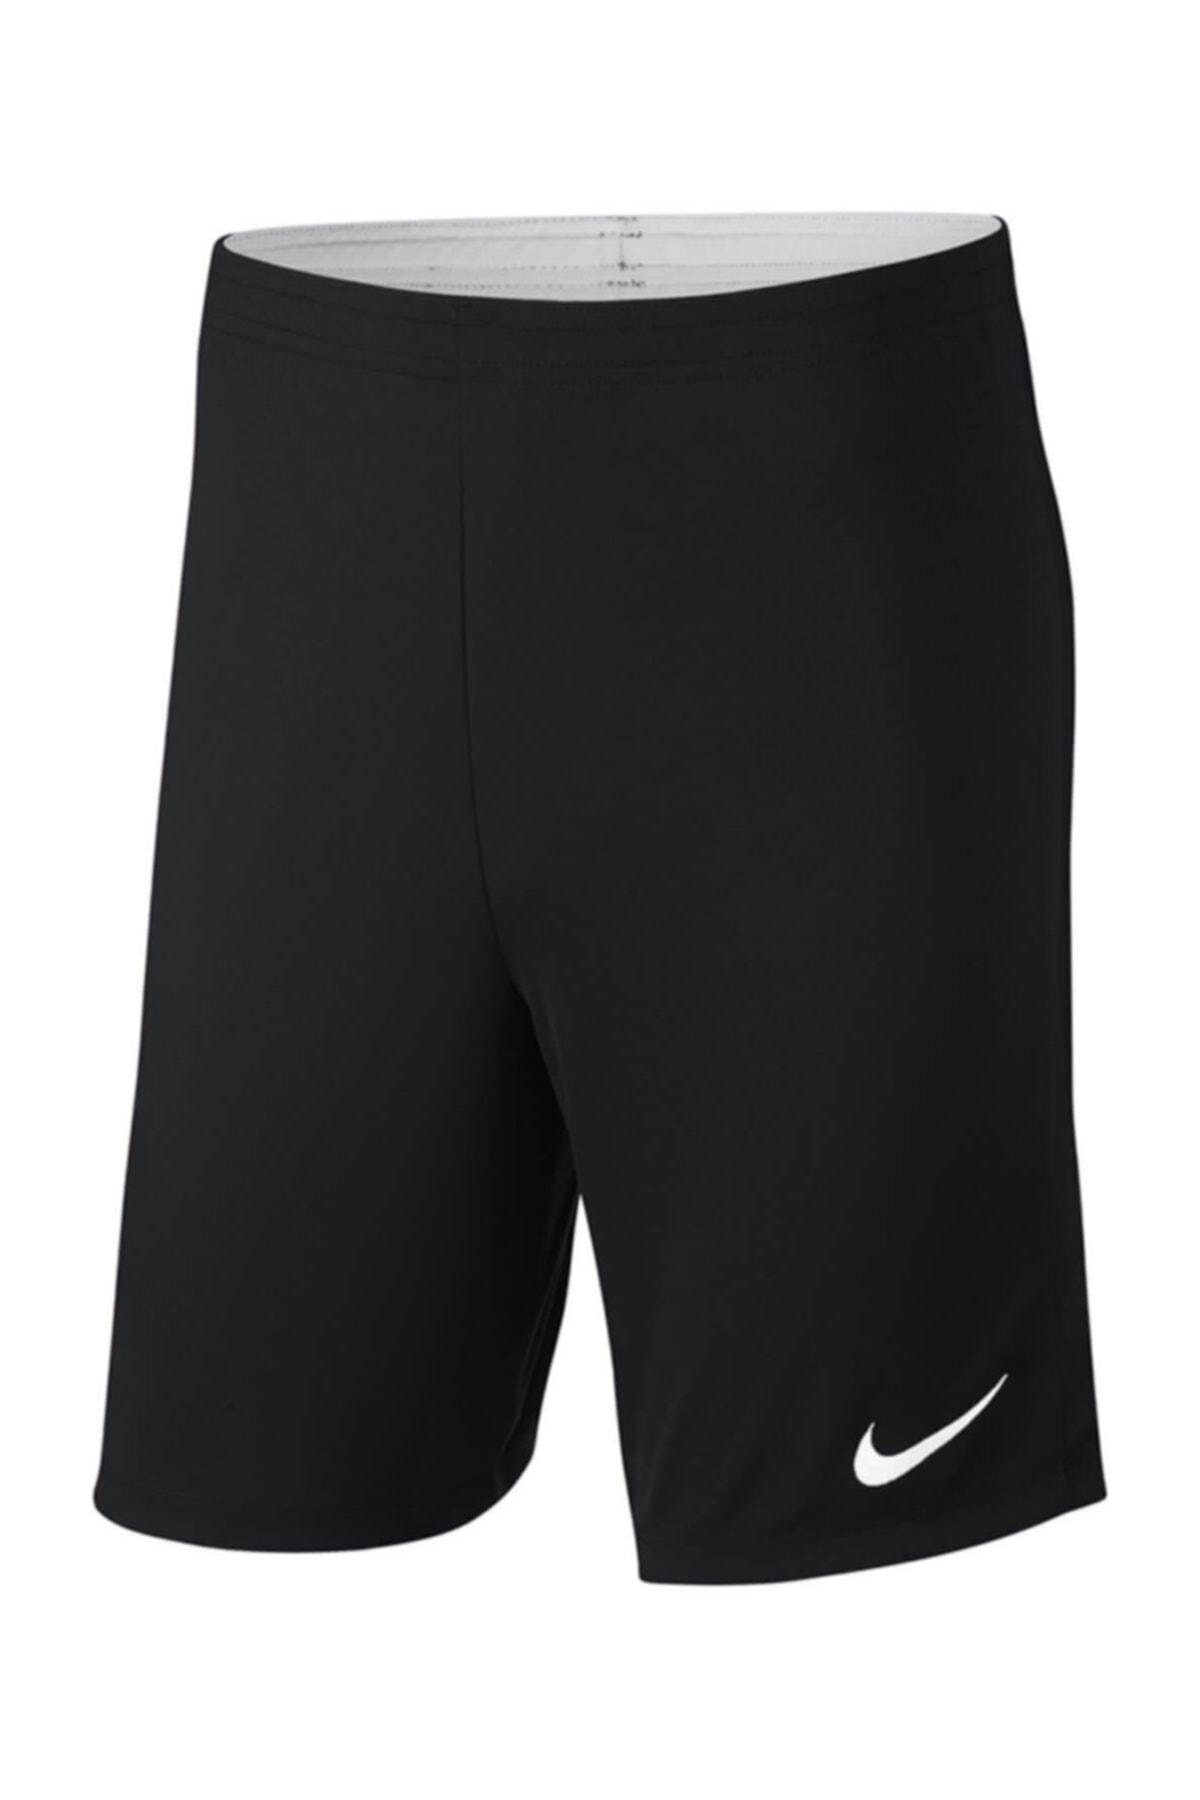 Marine feasible relaxed Nike Erkek Şort/bermuda - Dry Academy Erkek Futbol Şortu - 893691-010  Fiyatı, Yorumları - TRENDYOL